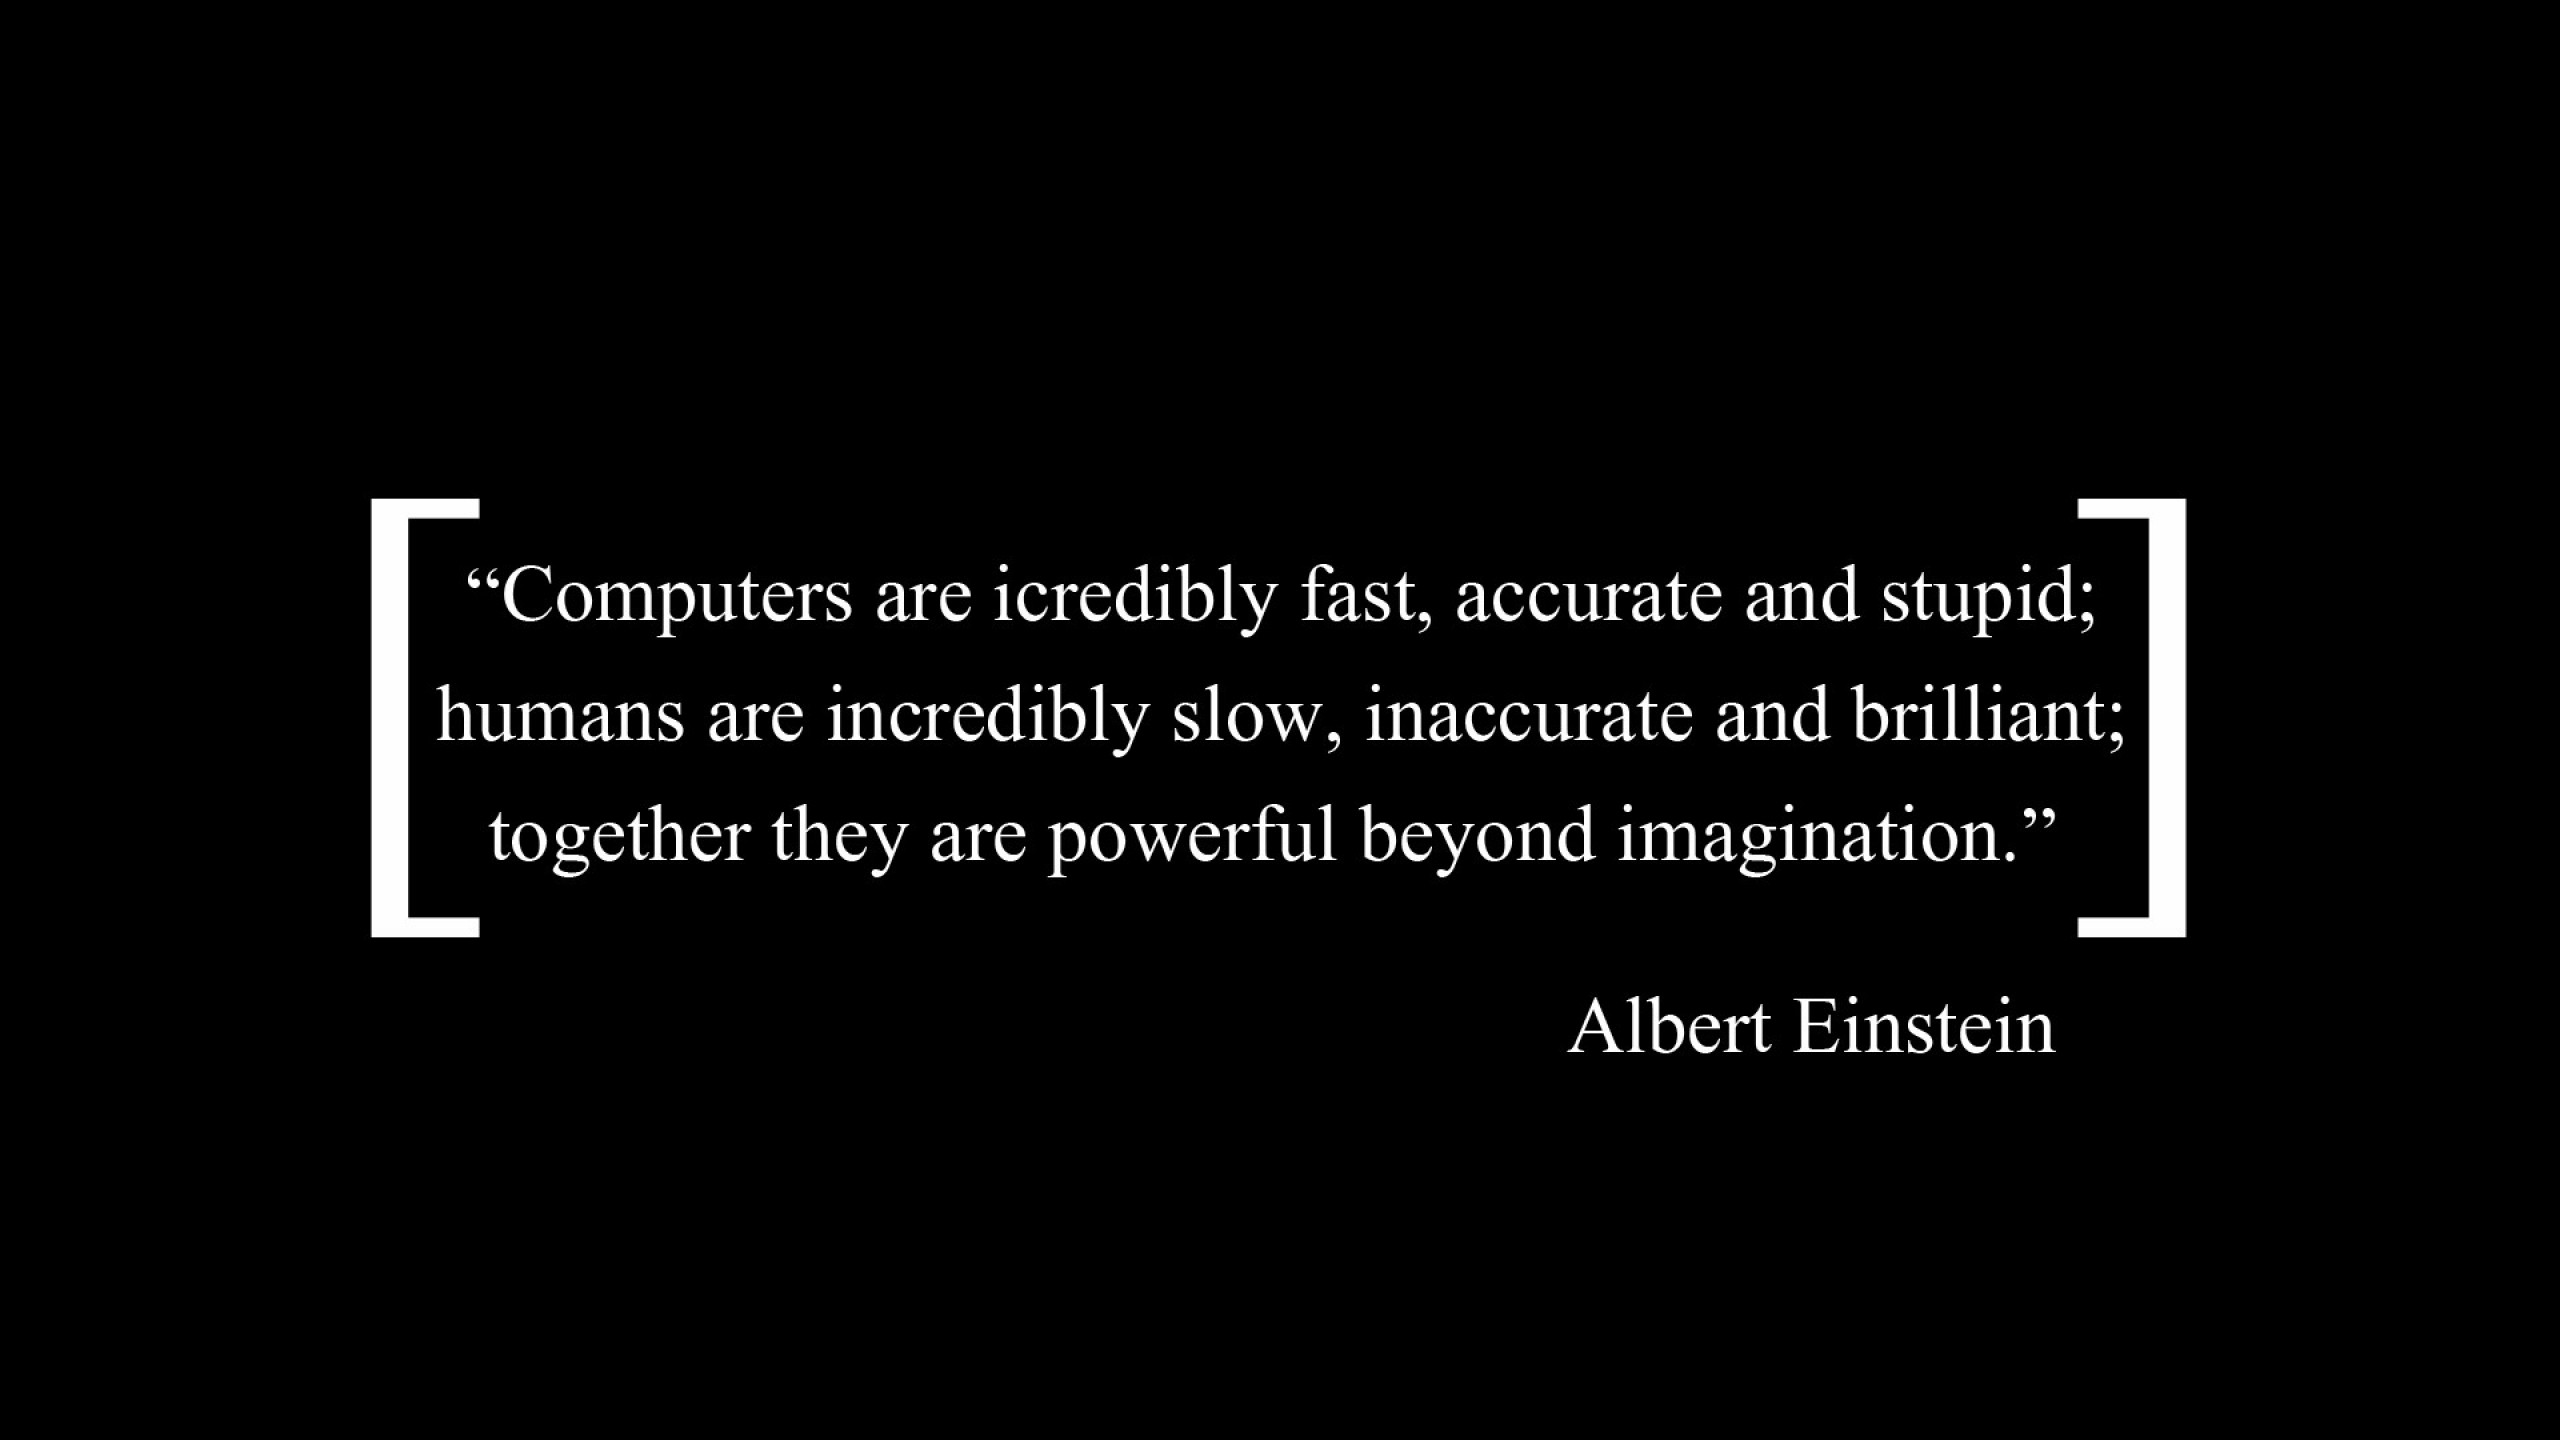 General 2560x1440 Albert Einstein typo quote simple background black background